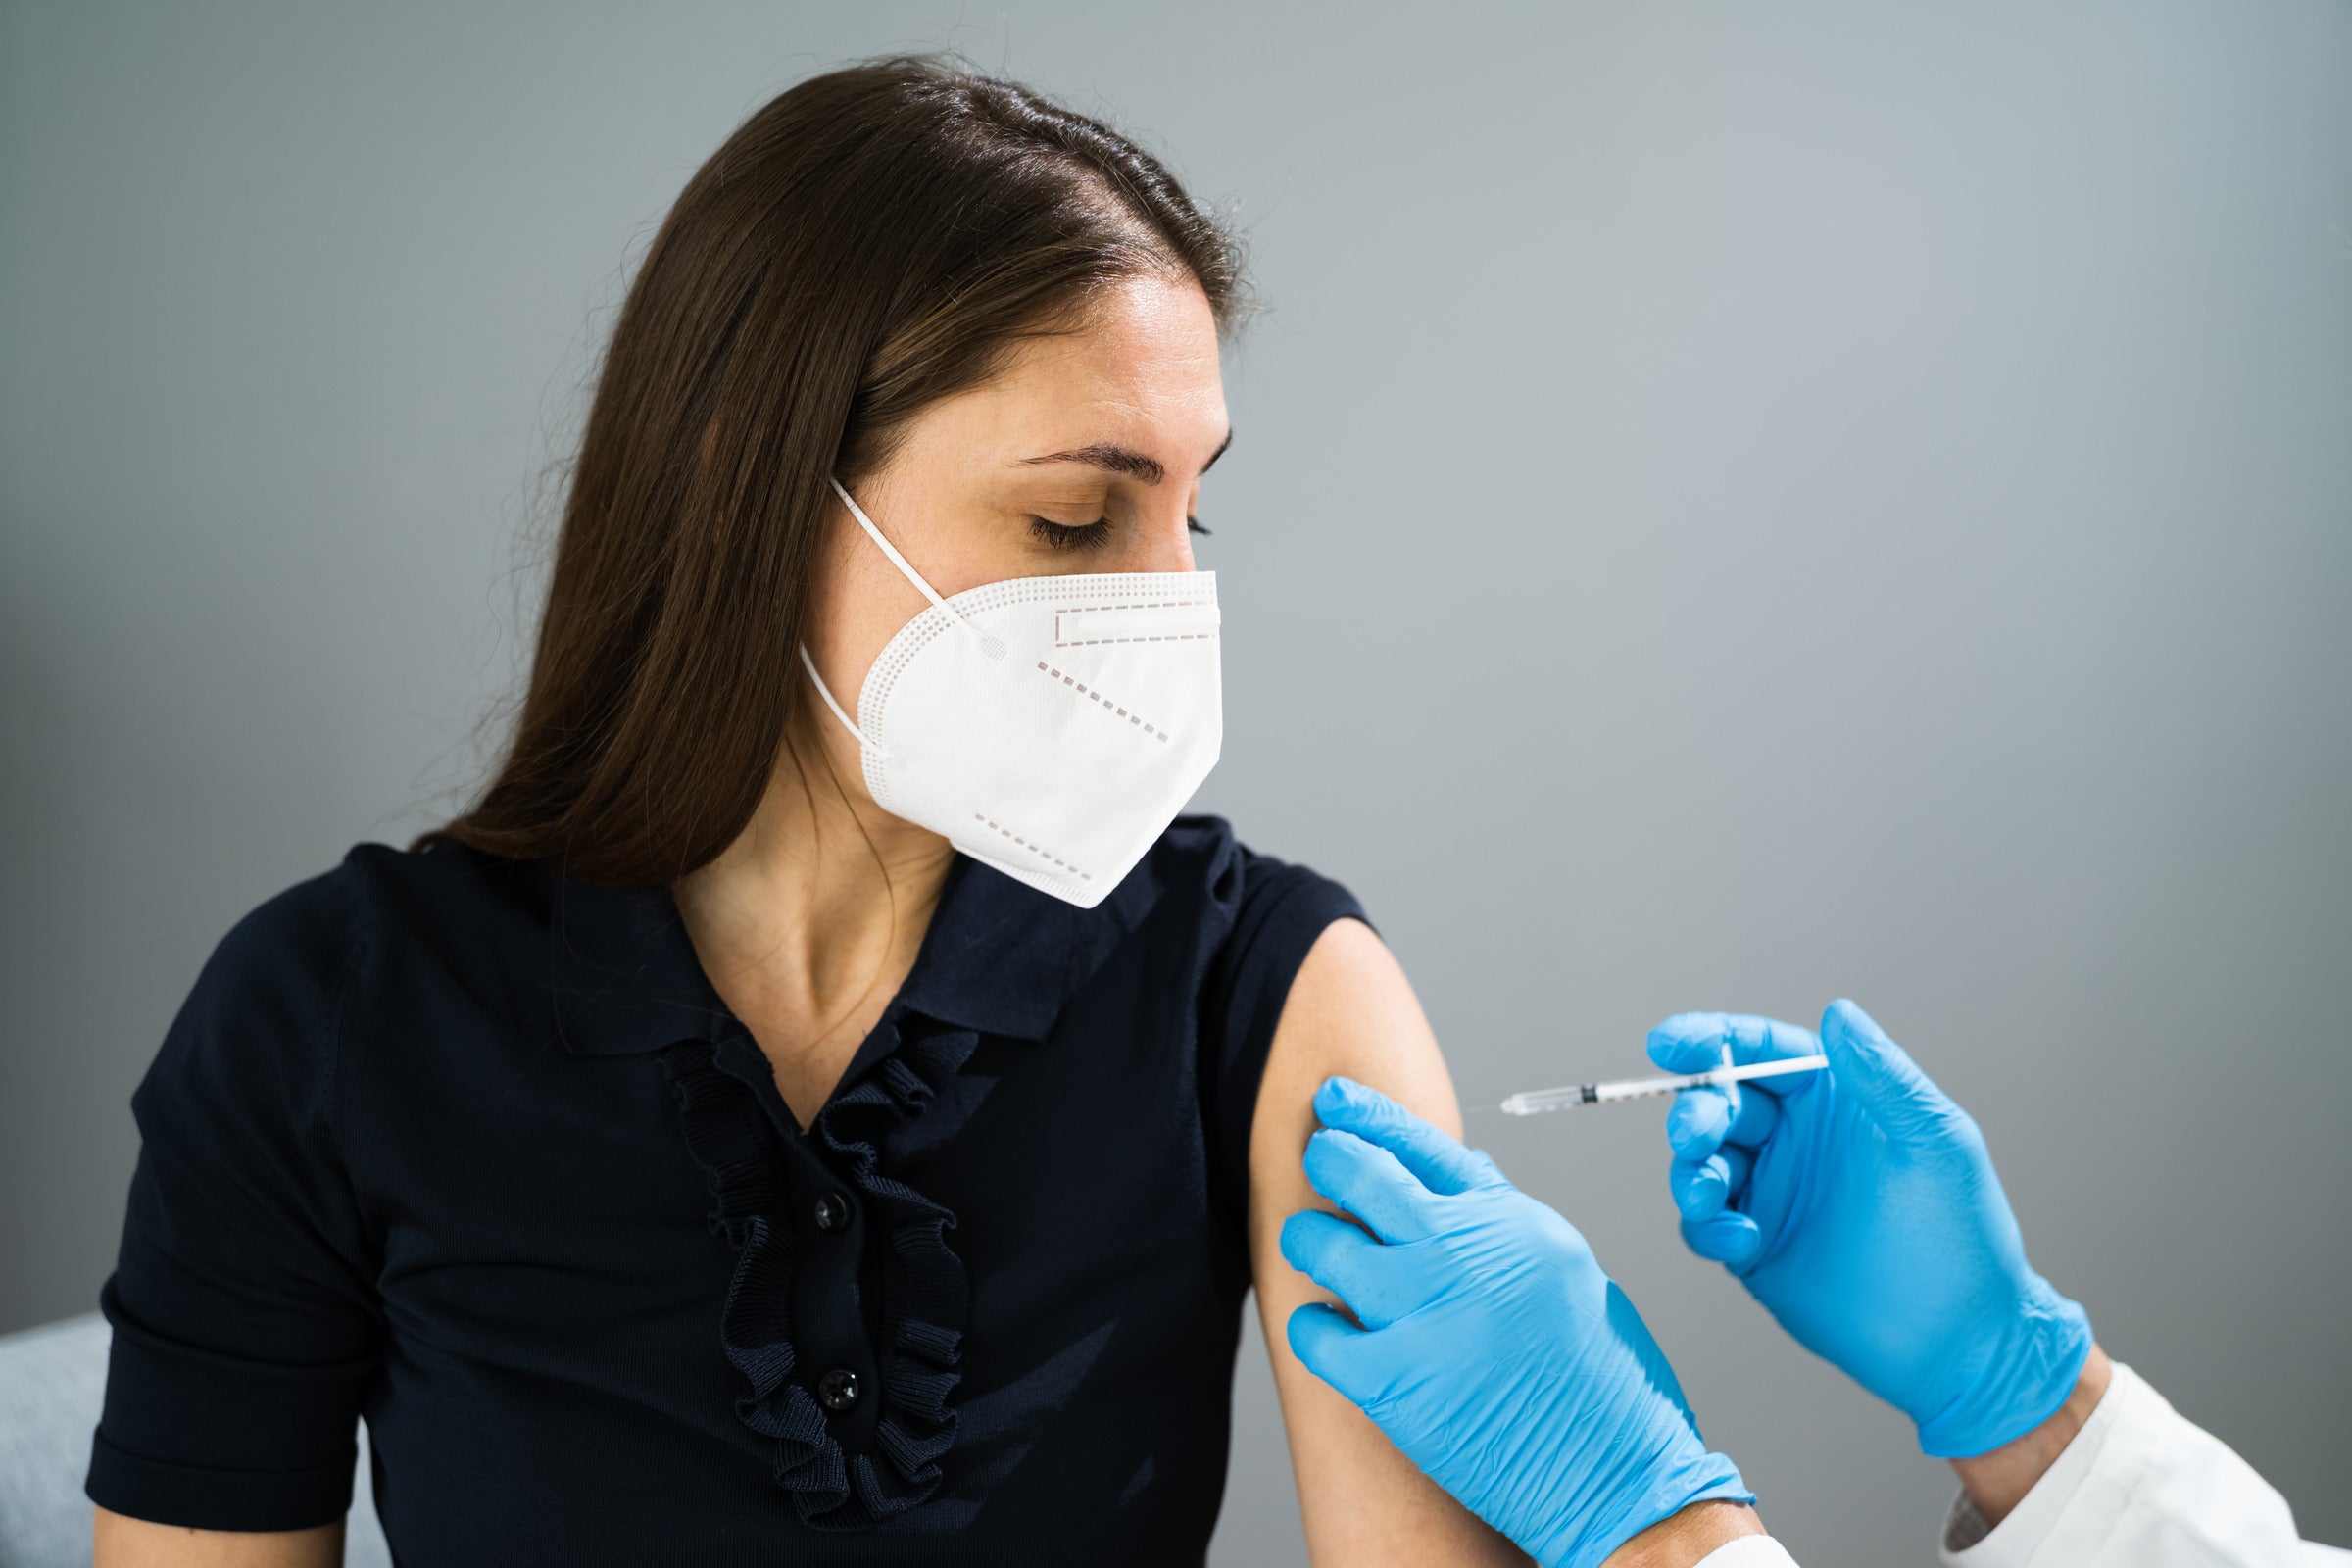 6 Precautions When Getting The Flu And Covid Vaccine